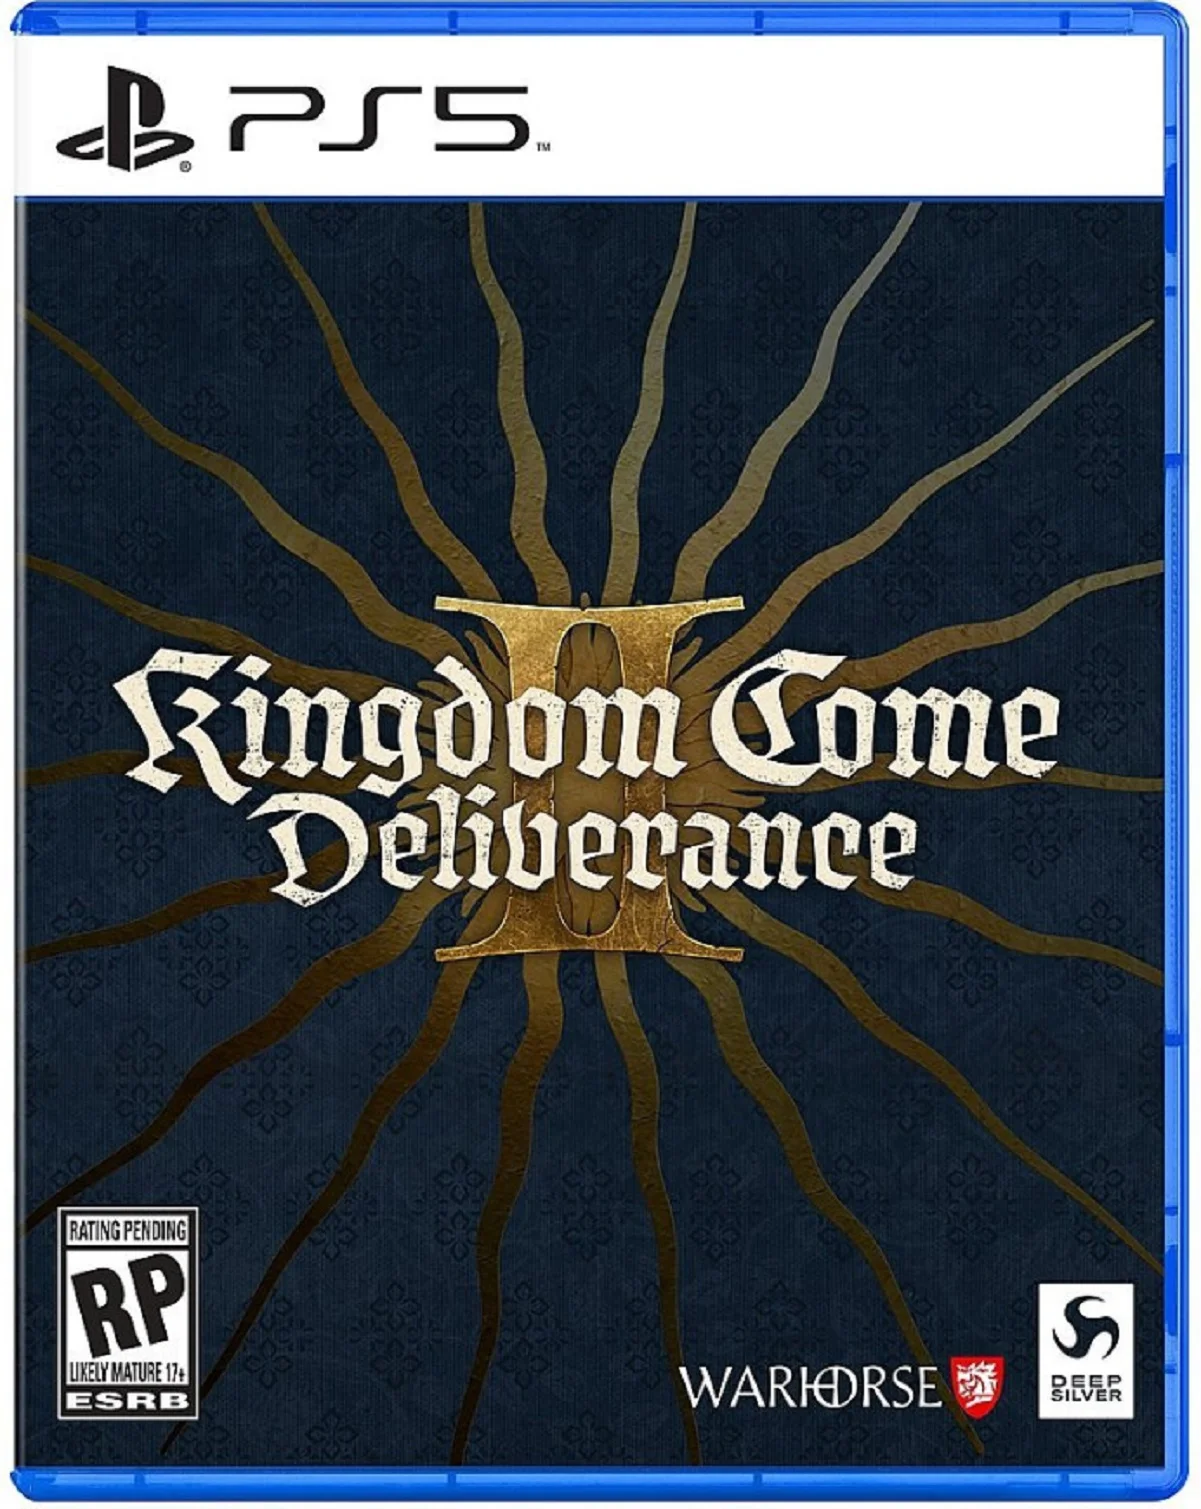 Диски с Kingdom Come Deliverance 2 для консолей будут продавать по 70 долларов - фото 1